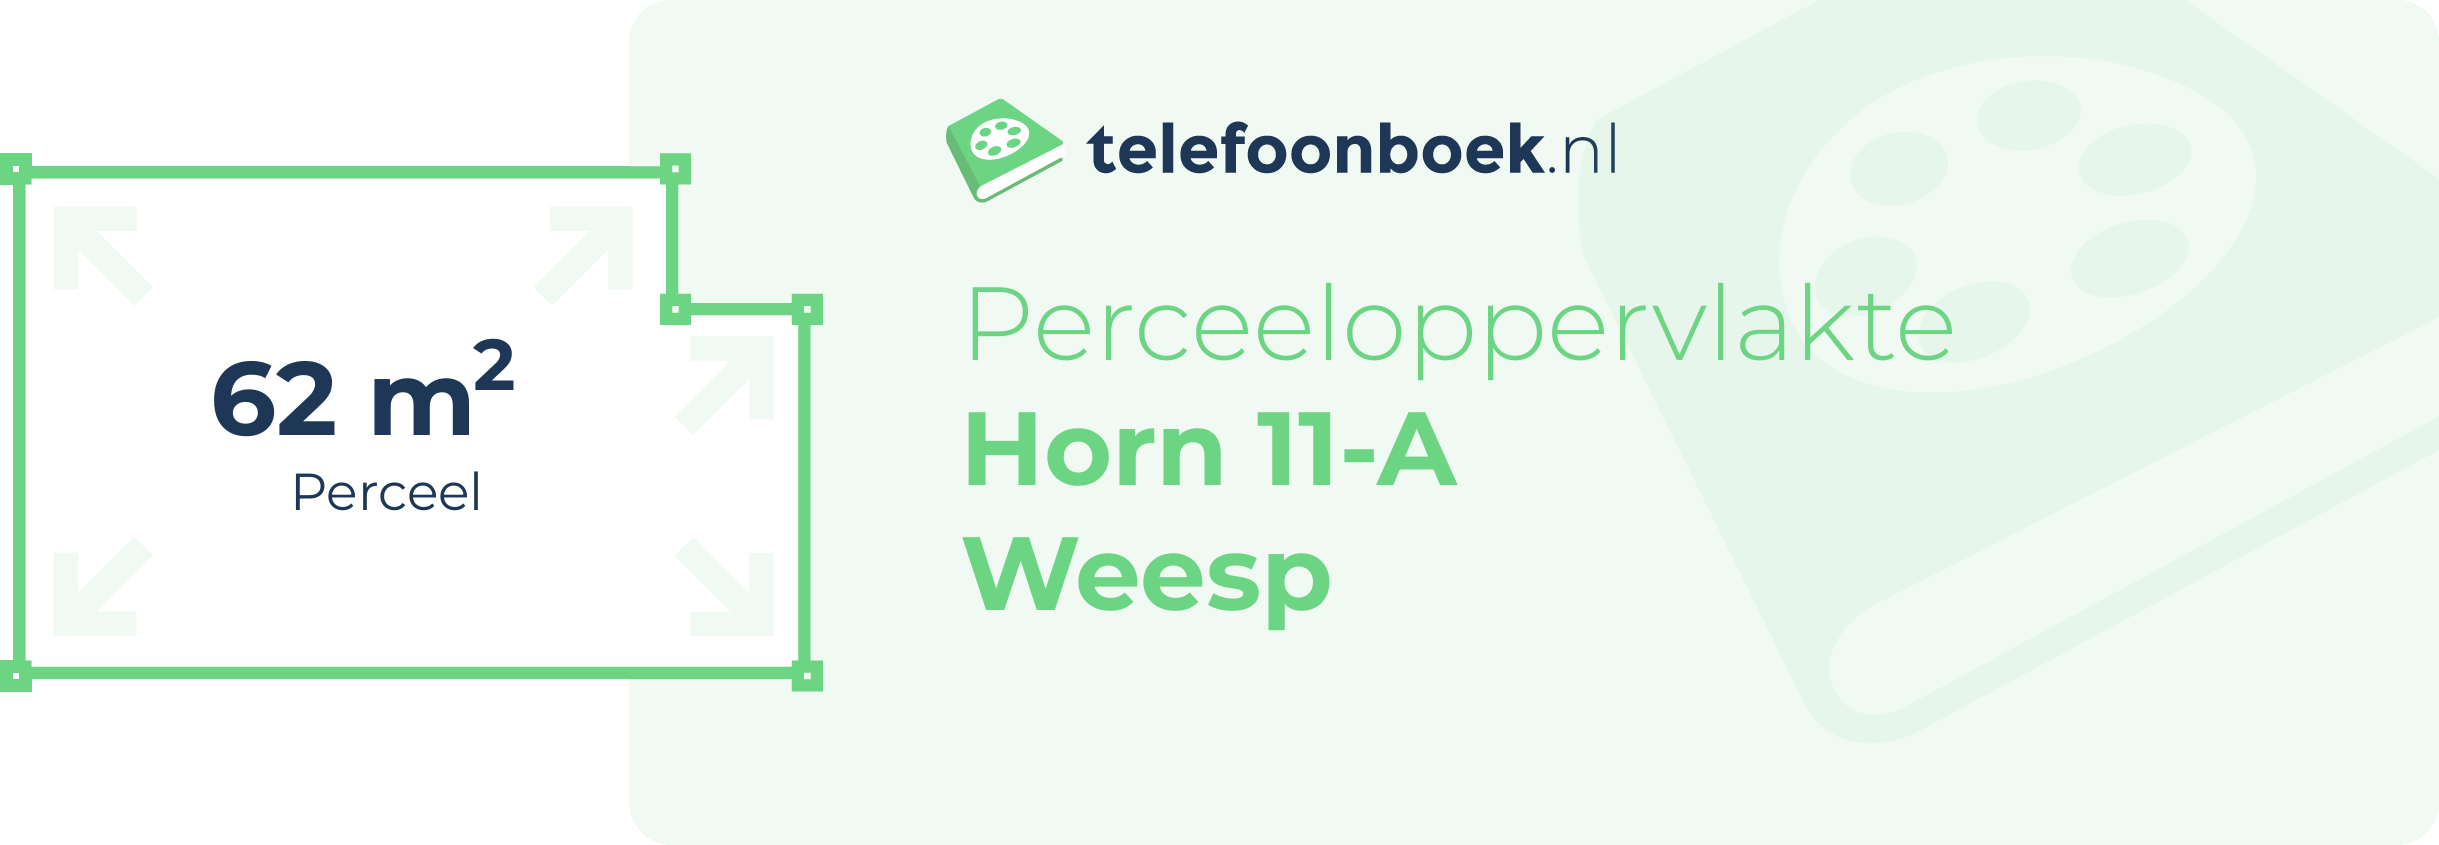 Perceeloppervlakte Horn 11-A Weesp